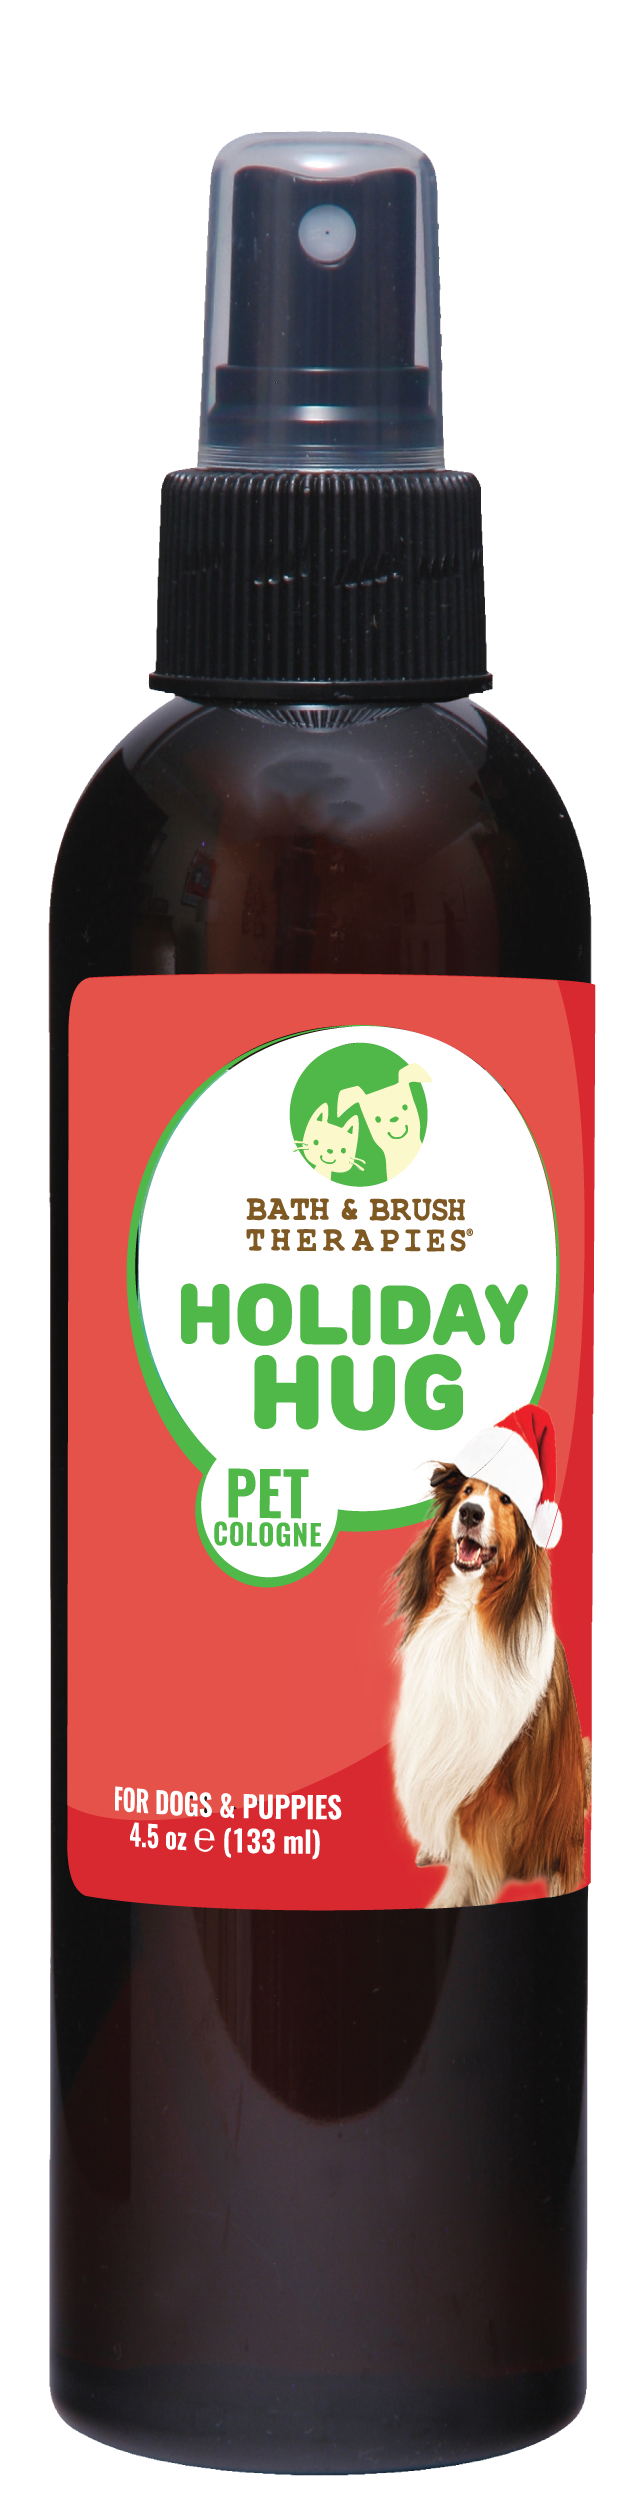 Holiday Hug Pet Cologne | Bath & Brush Therapies®